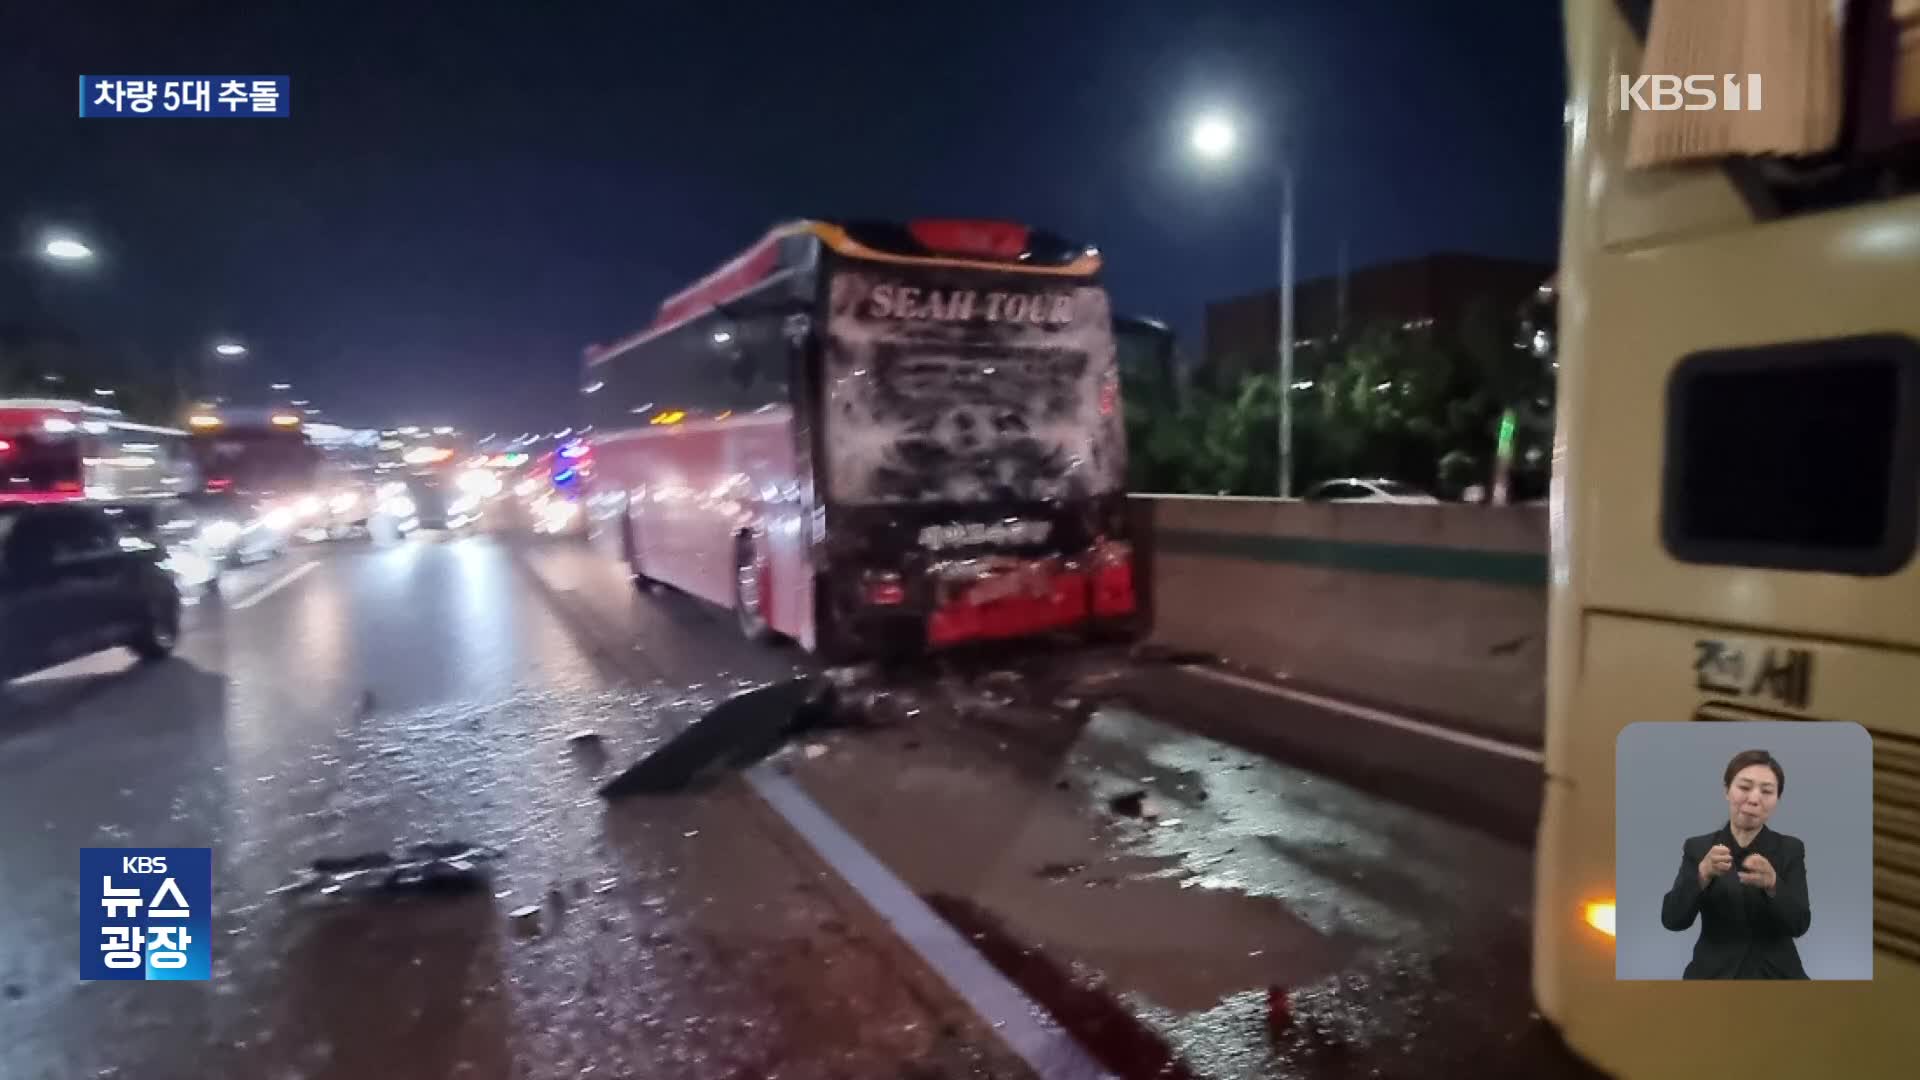 경부고속도로 5중 추돌 사고로 ‘15명 부상’…밤 사이 사건 사고